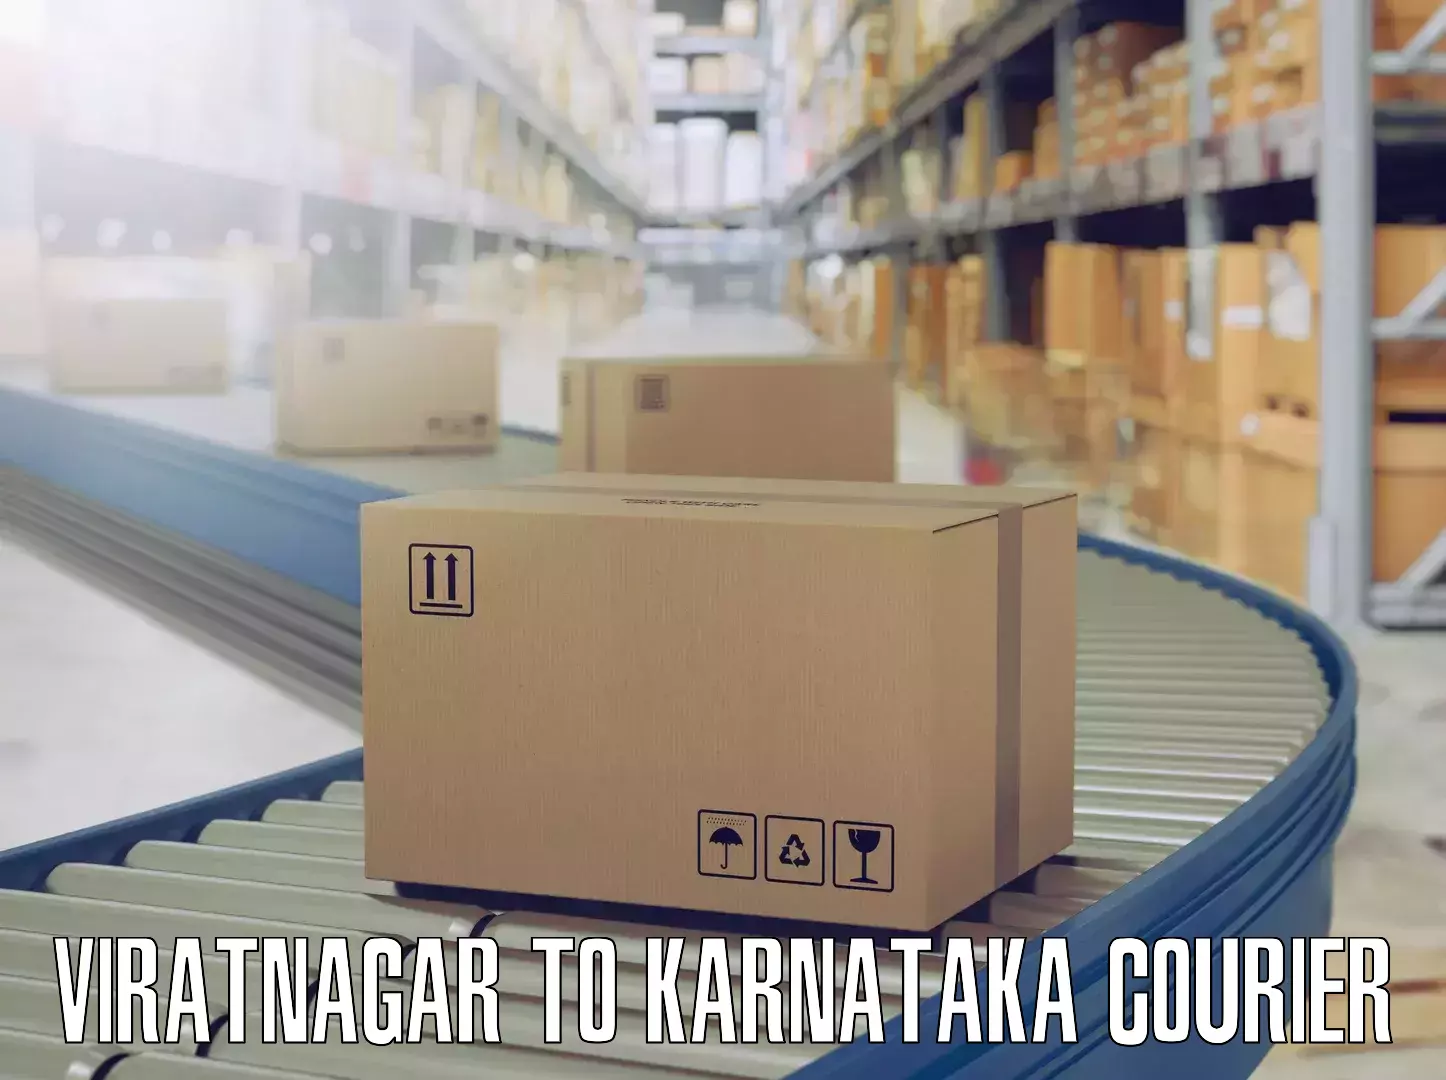 Reliable goods transport Viratnagar to Kalaburagi